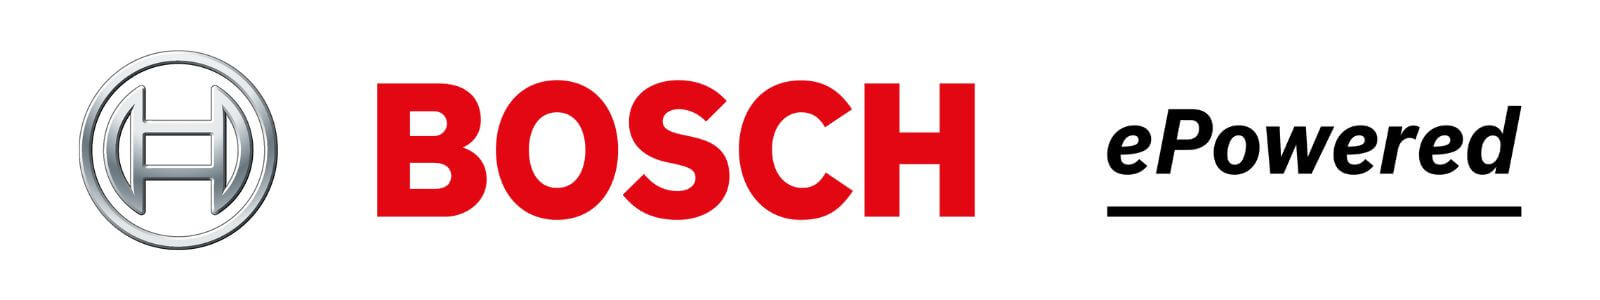 Bosch UL Certified